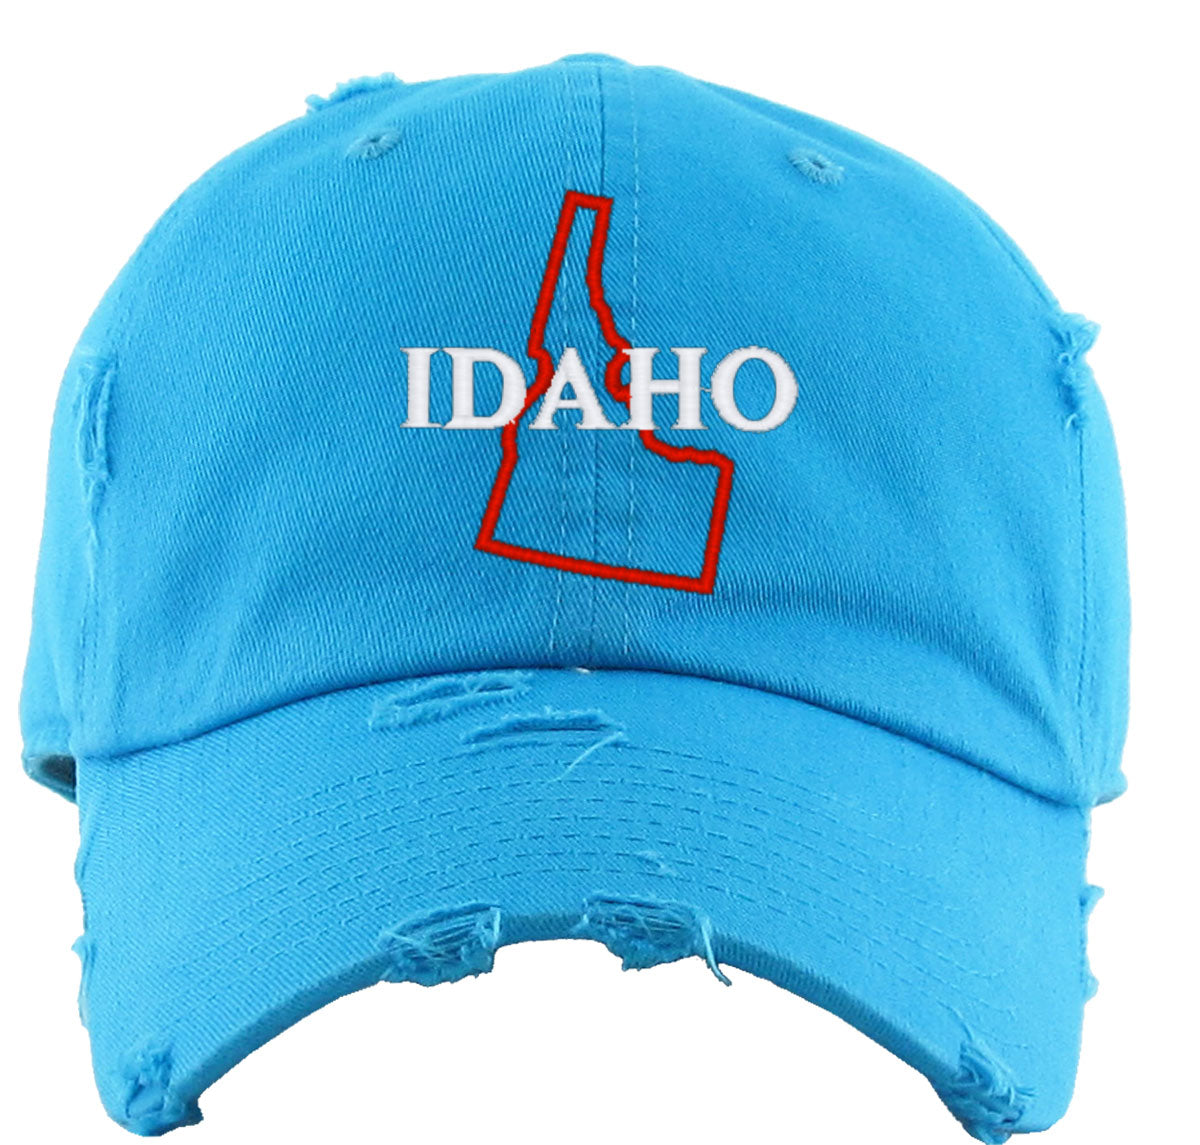 Idaho Vintage Baseball Cap